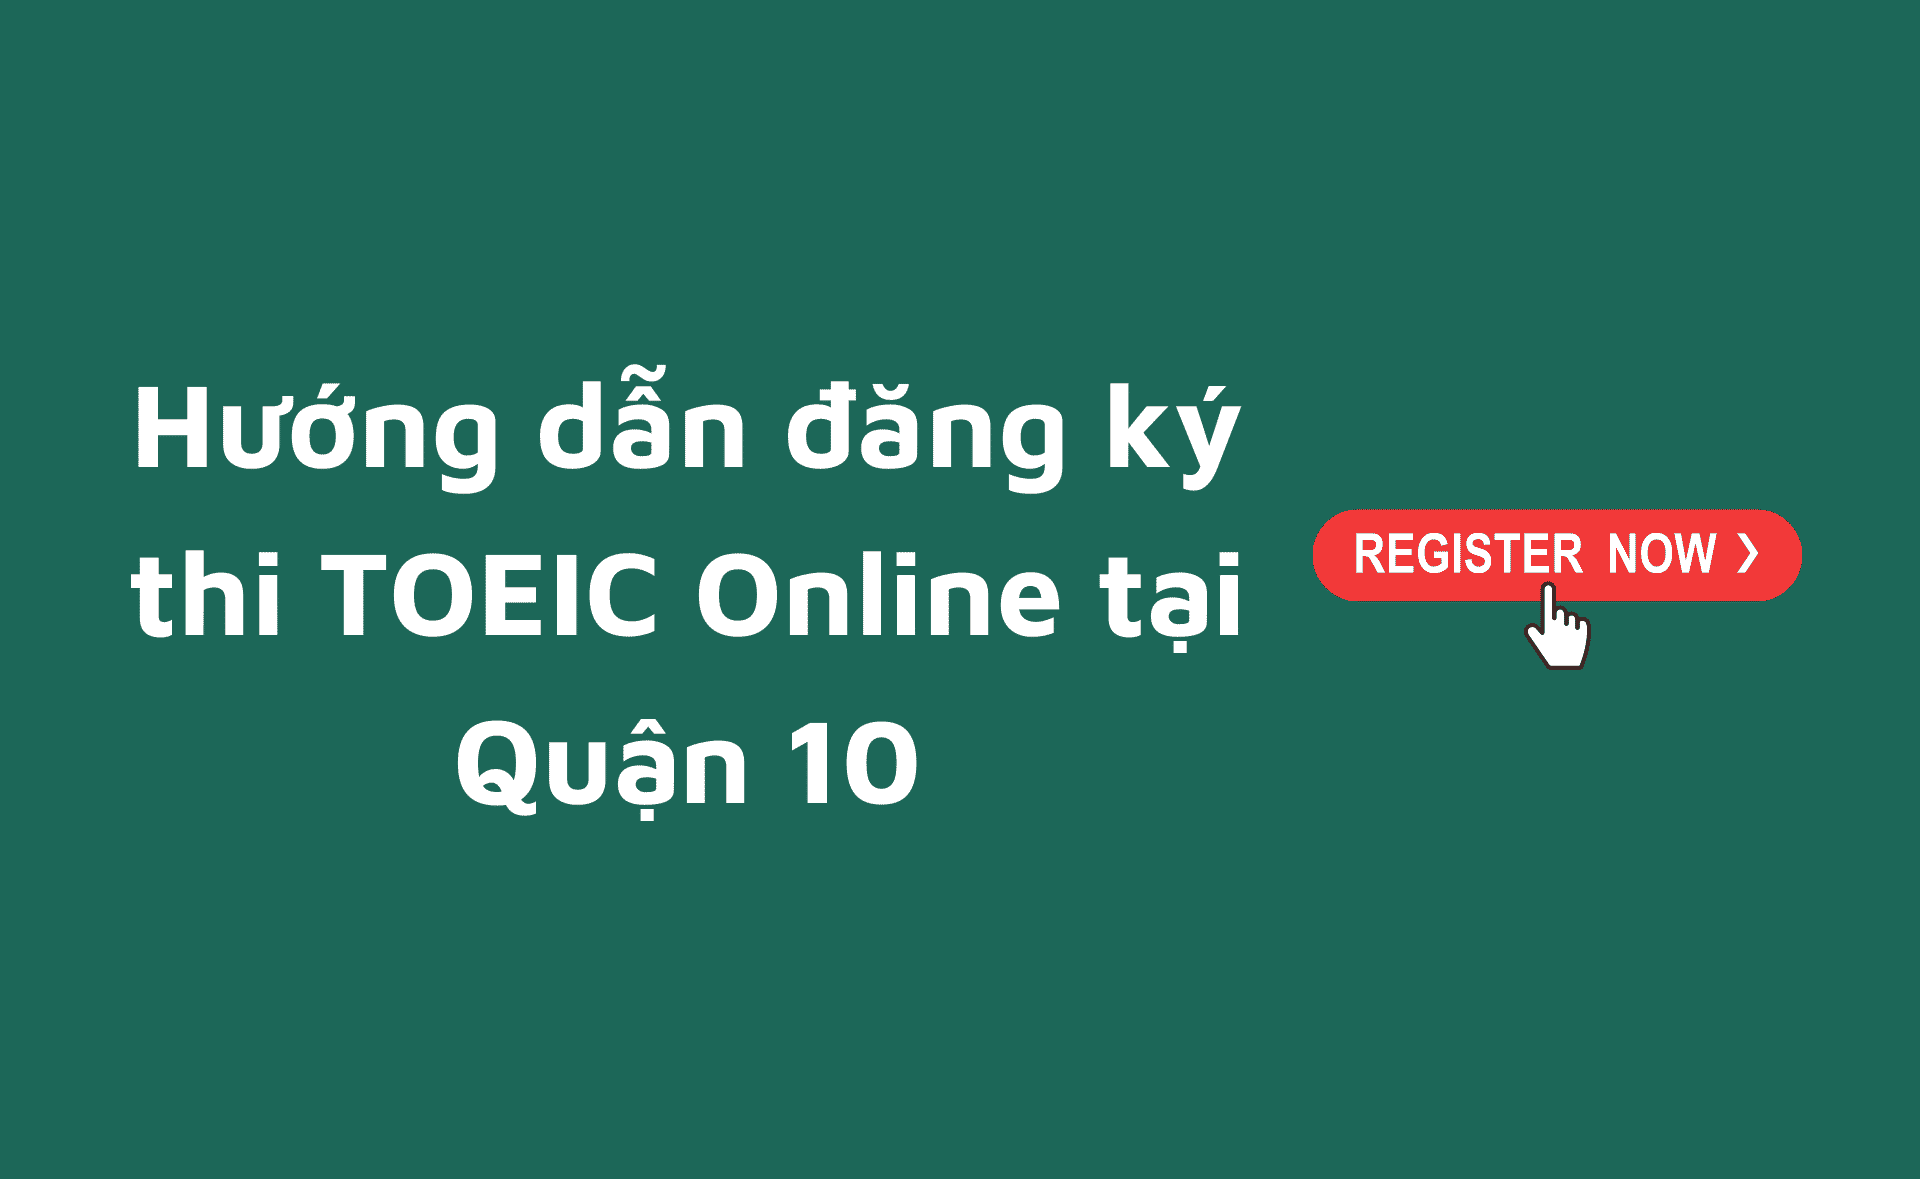 đăng ký thi TOEIC online tại quận 10